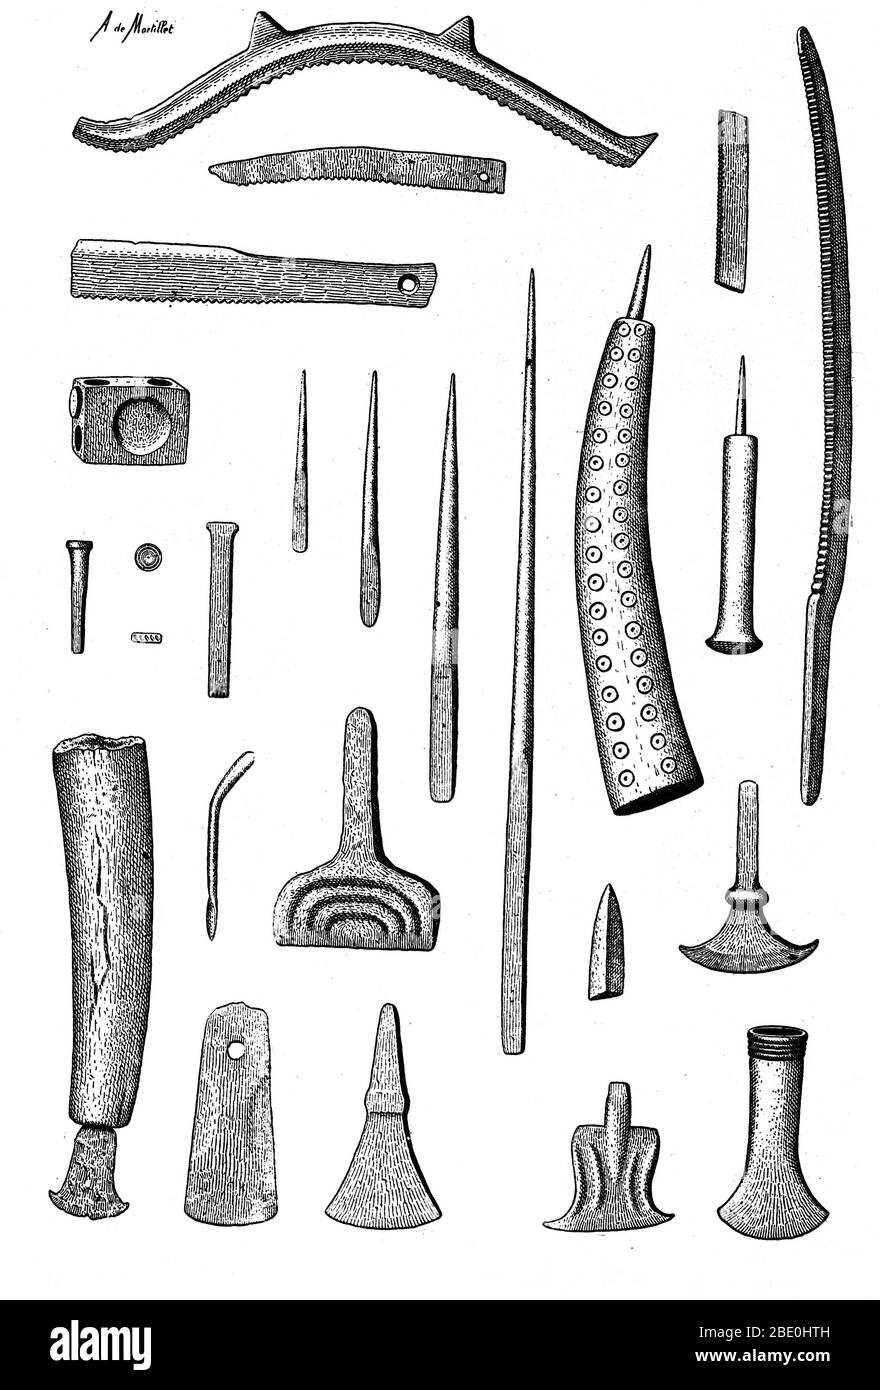 Spätbronzezeitliche europäische Werkzeuge wie Hämmer, Meißel, Rillen und Sägen, c. 3200 bis 600 v. Chr. Stockfoto